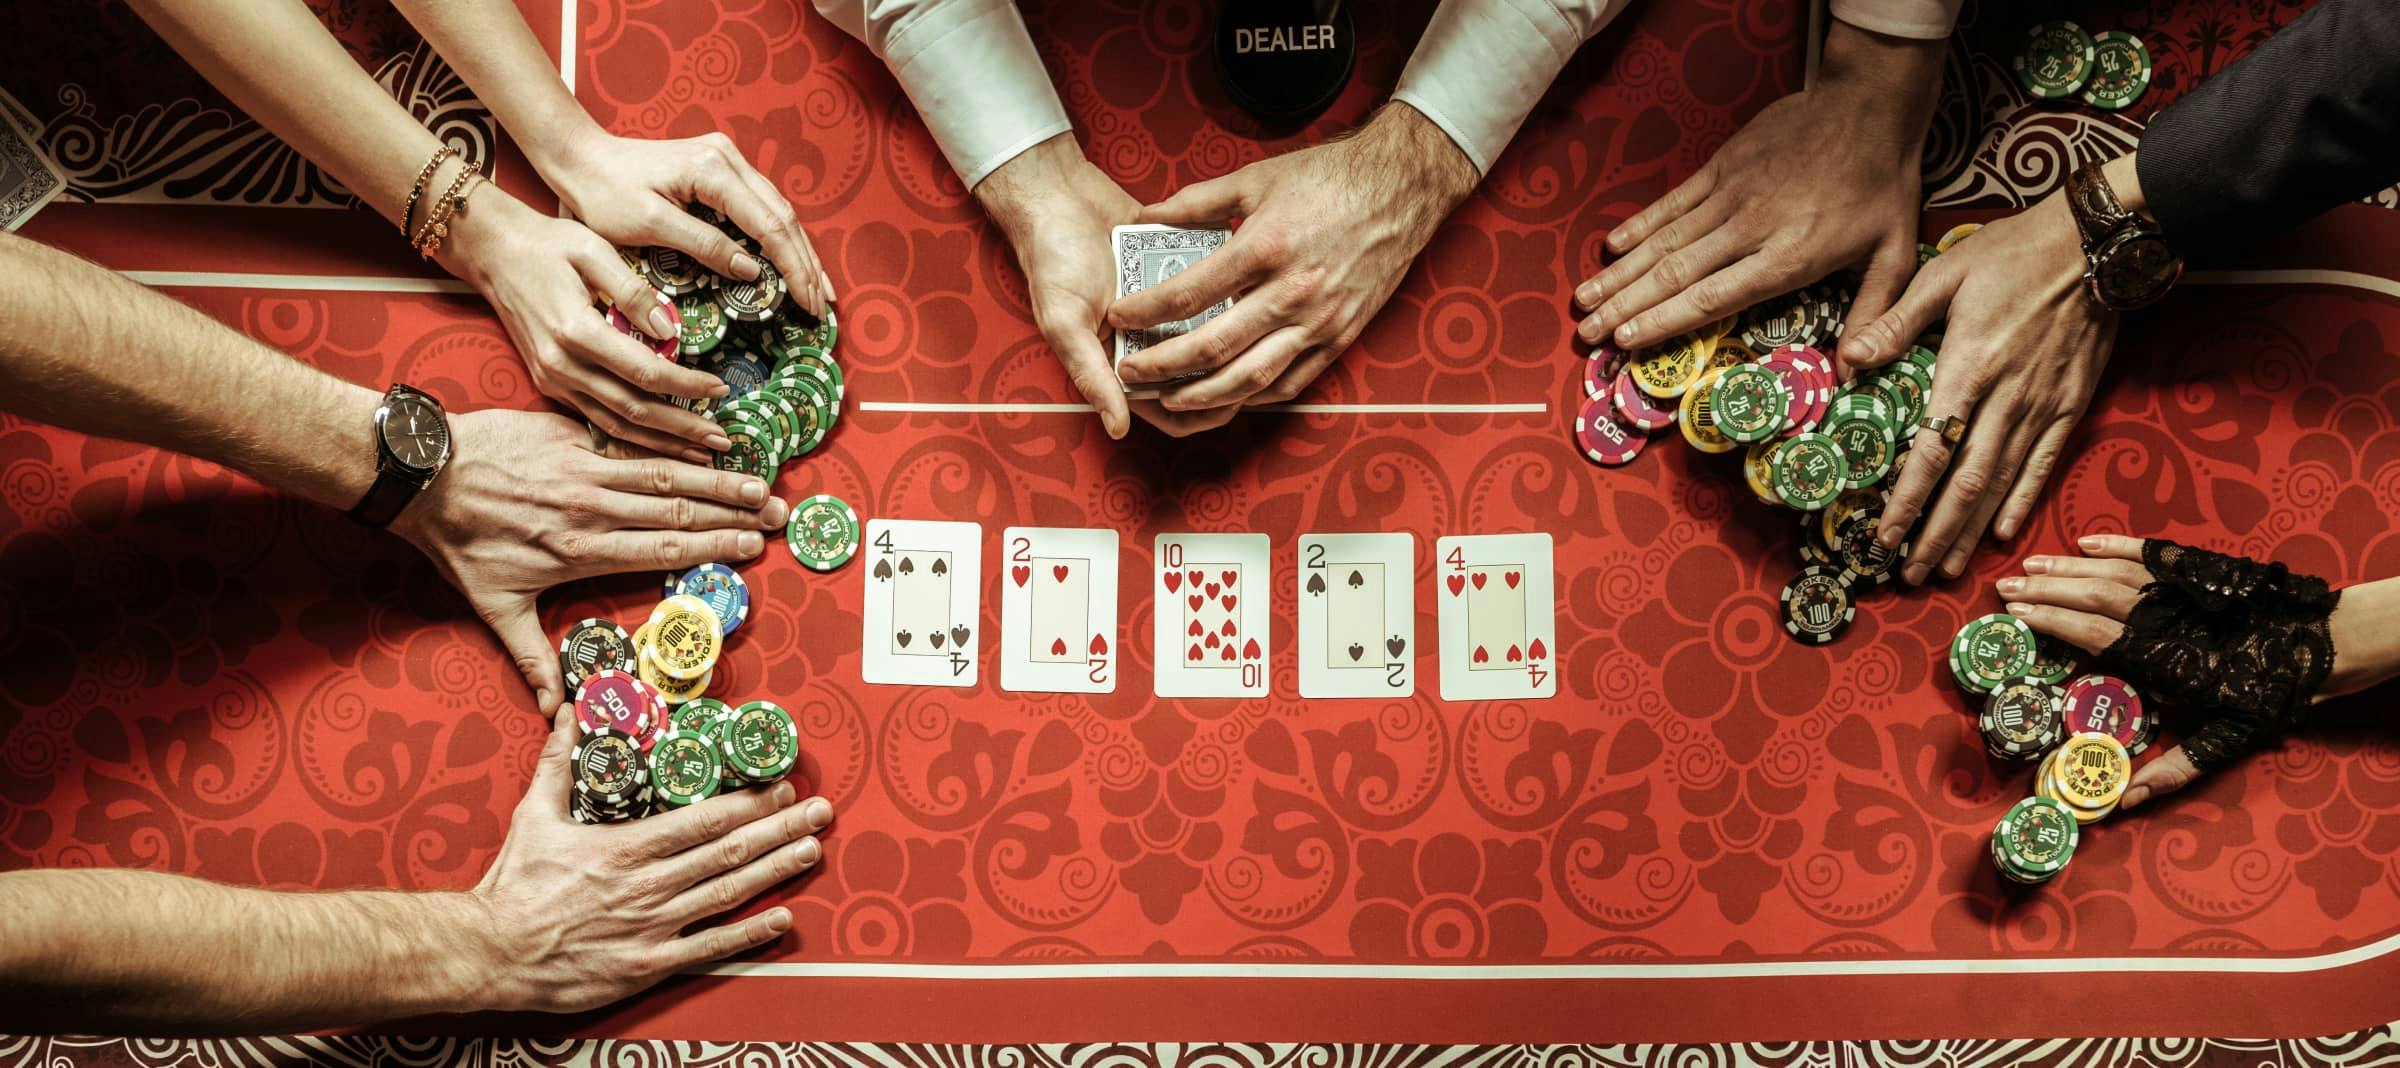 Lerne die Grundkenntnisse über Pokerchips